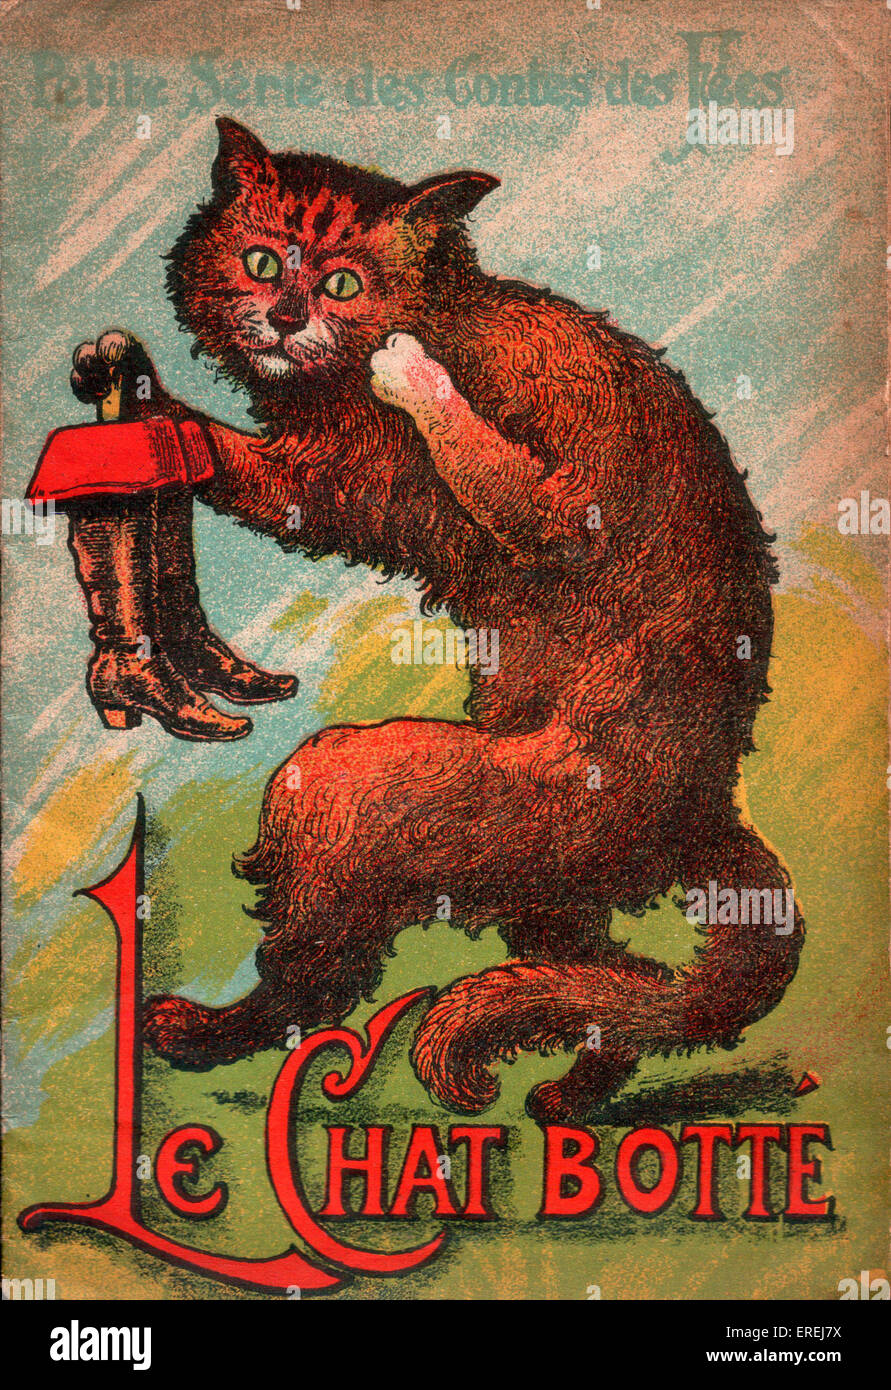 Couverture de l'édition française de Puss in Boots, ch. 1913. Puss est représenté tenant la paire de bottes magiques. Banque D'Images